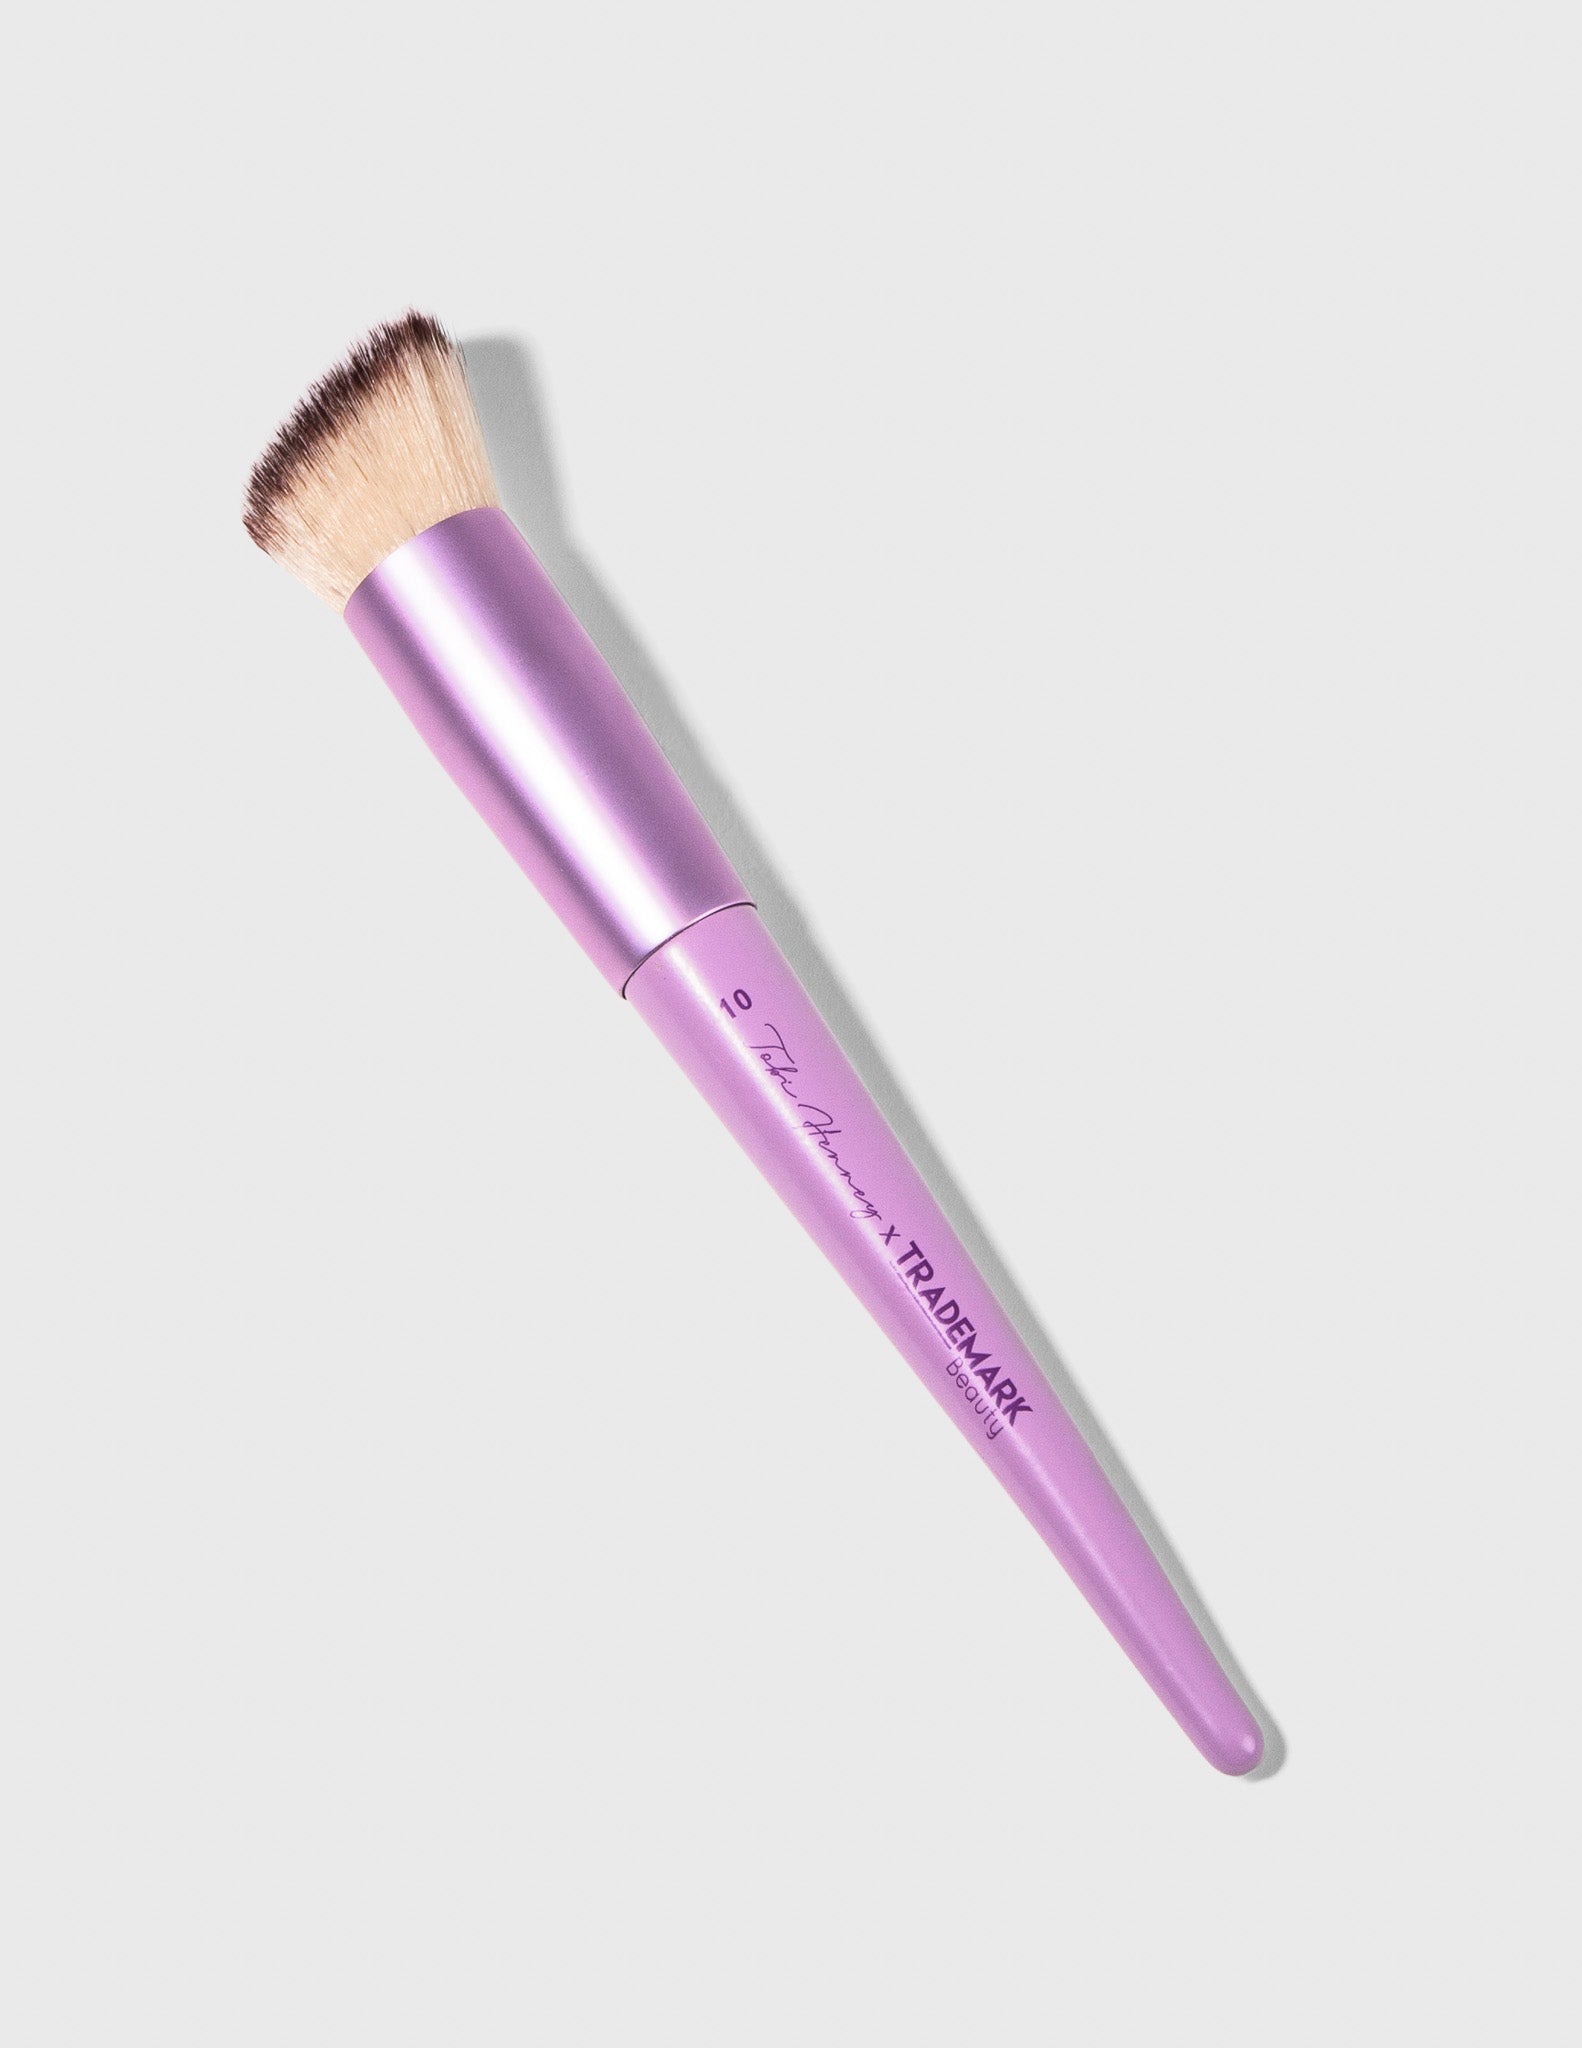 Contour Makeup Brush - #10 - Trademark Beauty